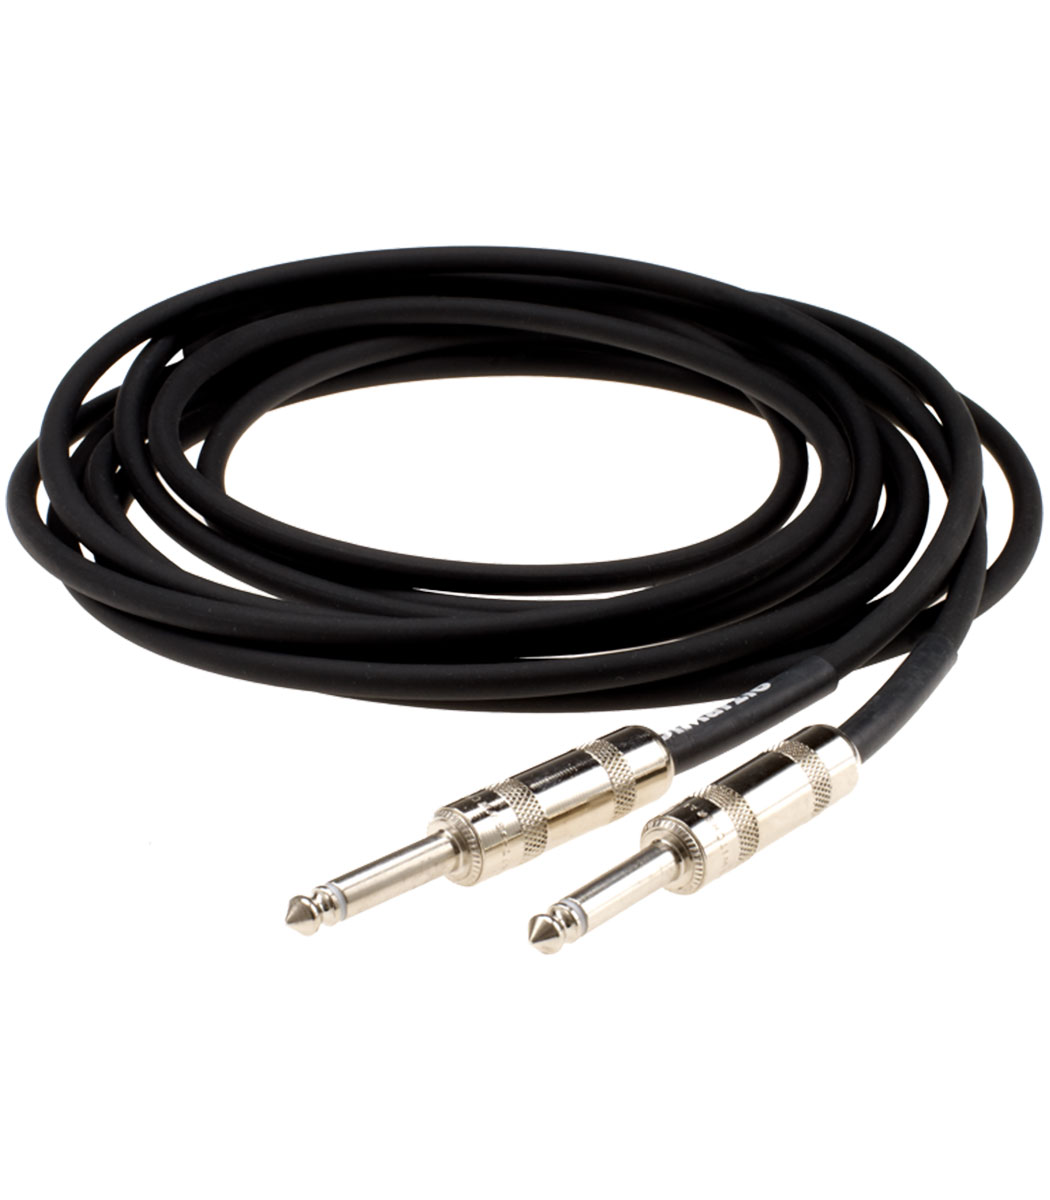 Straps & Leads : DiMarzio 10ft Instrument Cable - Black ...